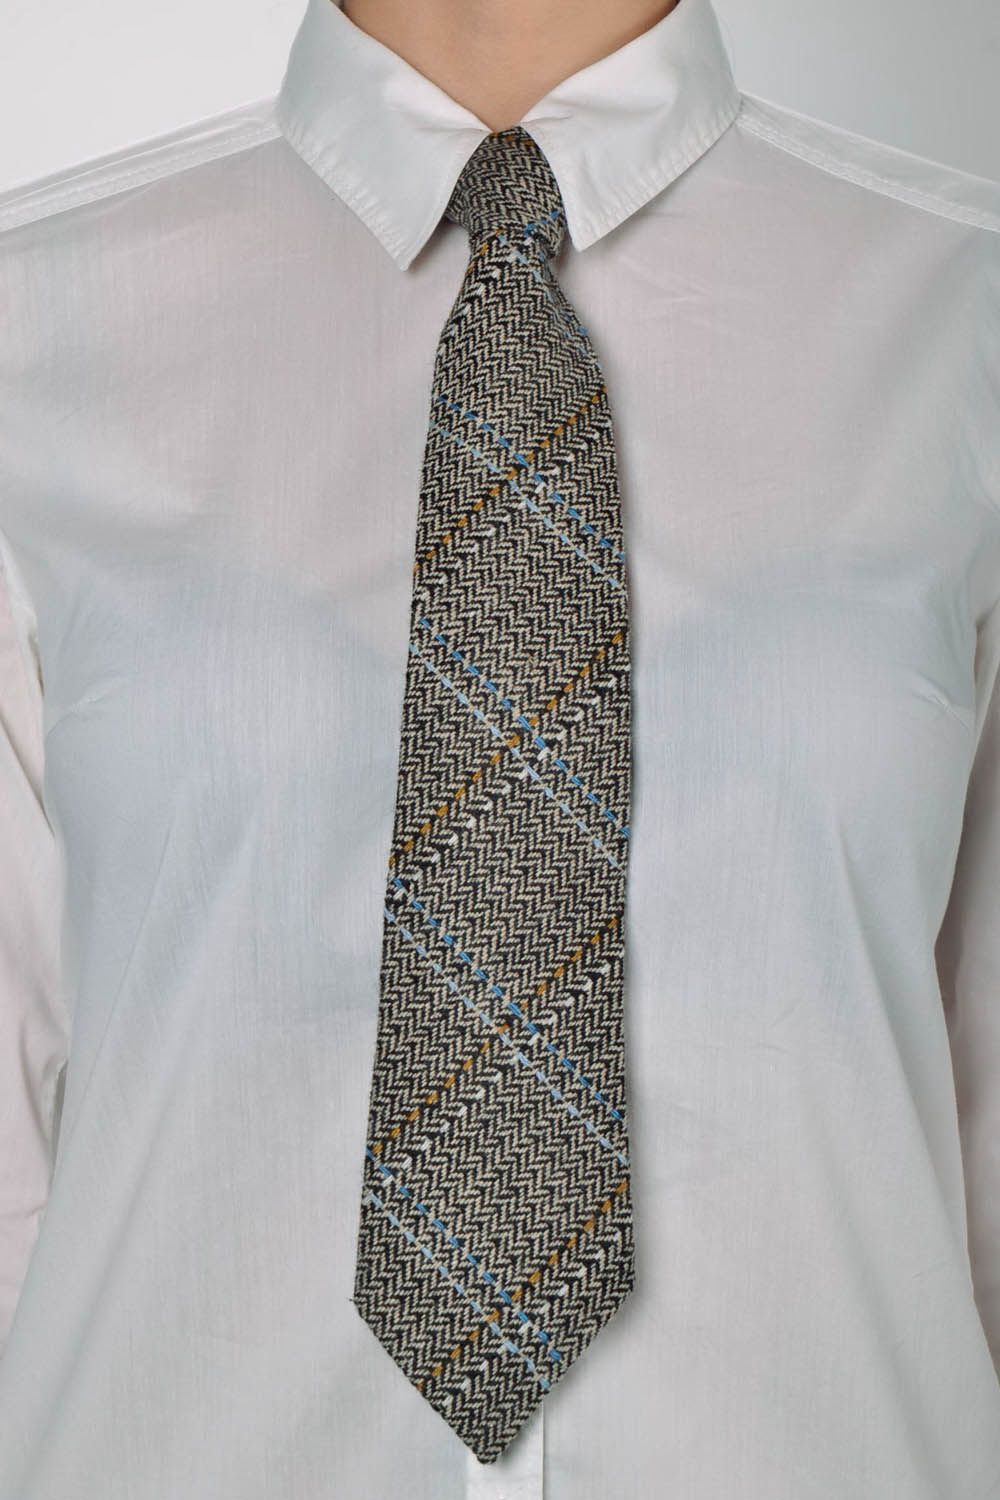 Cravate gris-marron faite main originale photo 5